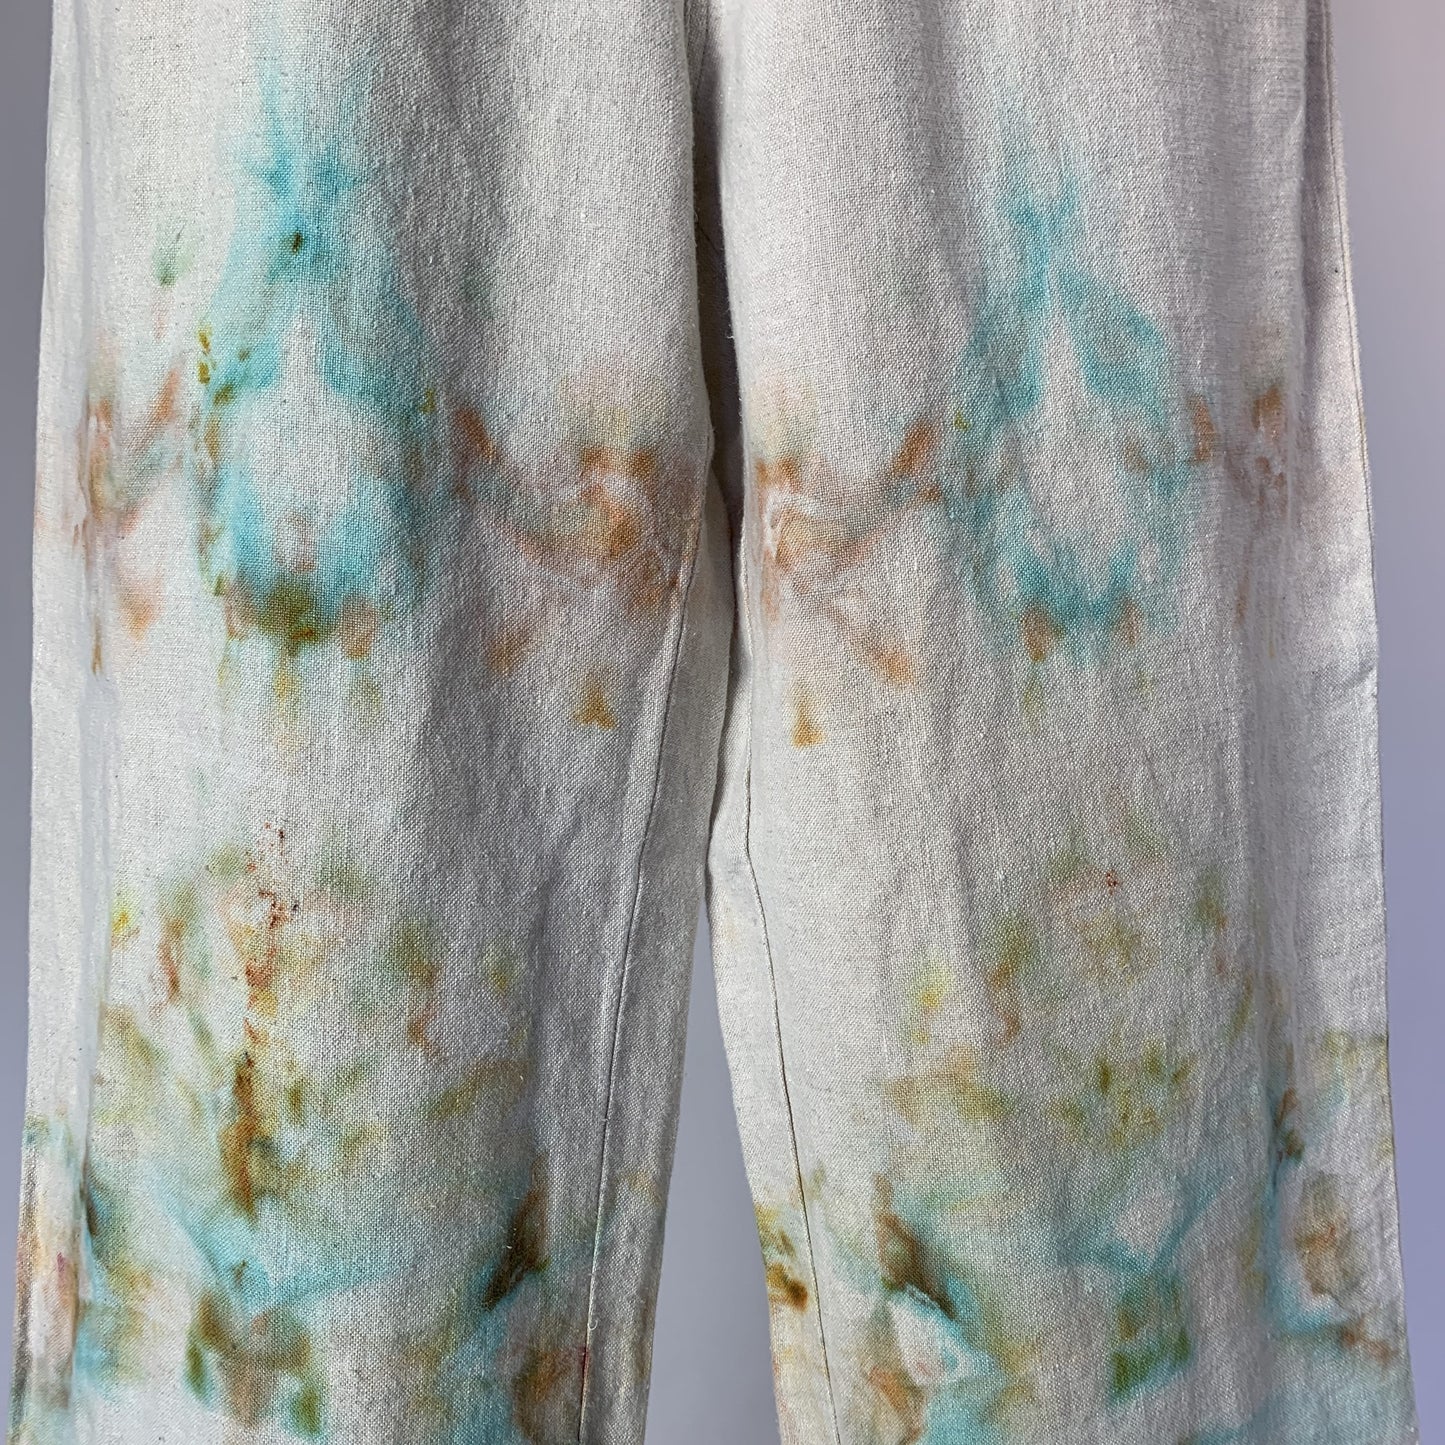 Bronze and Blue Pastel Fractals | Soft burlap wide leg pants | 30” waist